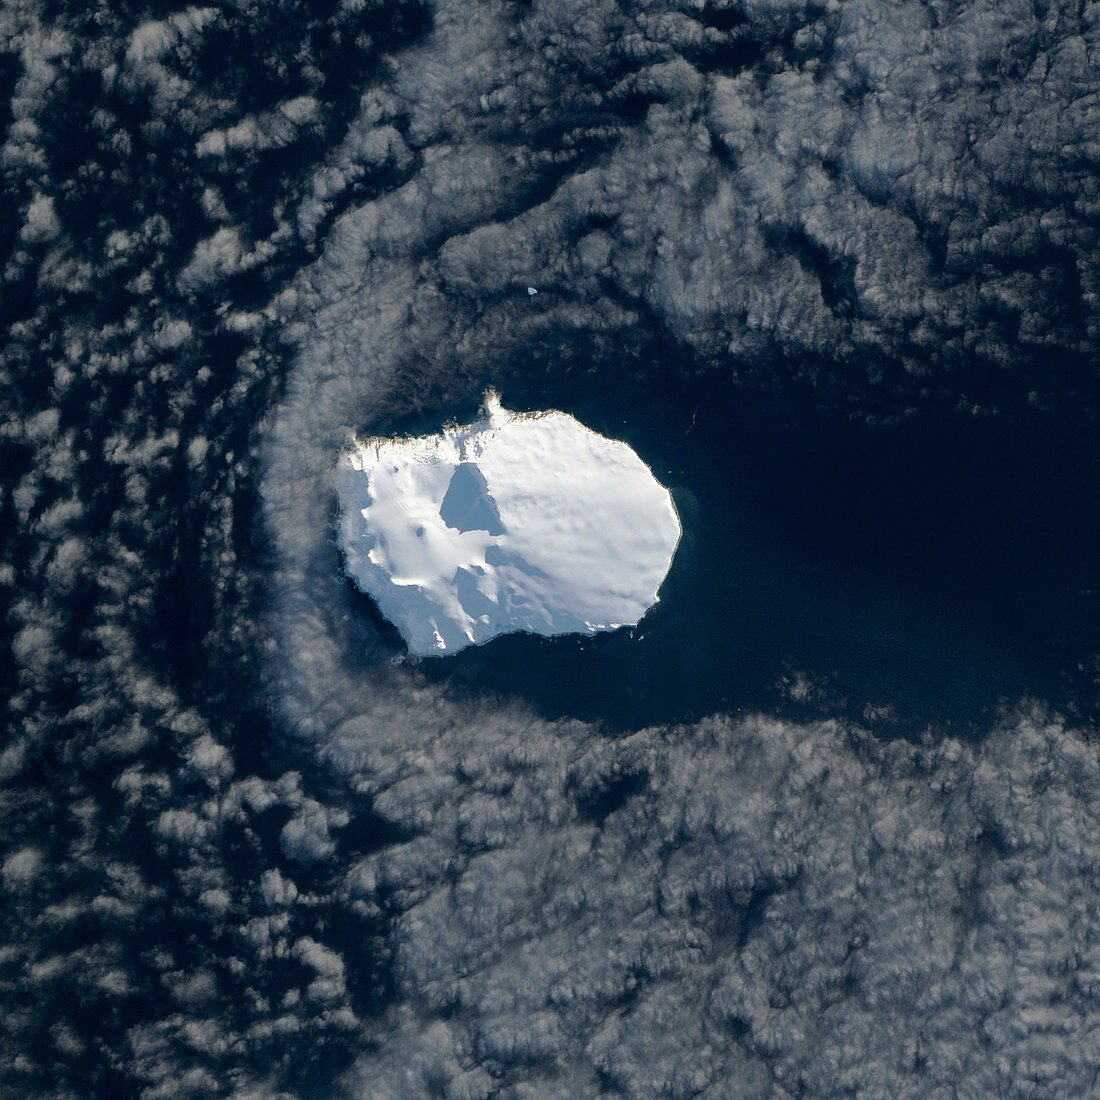 Bouvet Island,Landsat 8 image